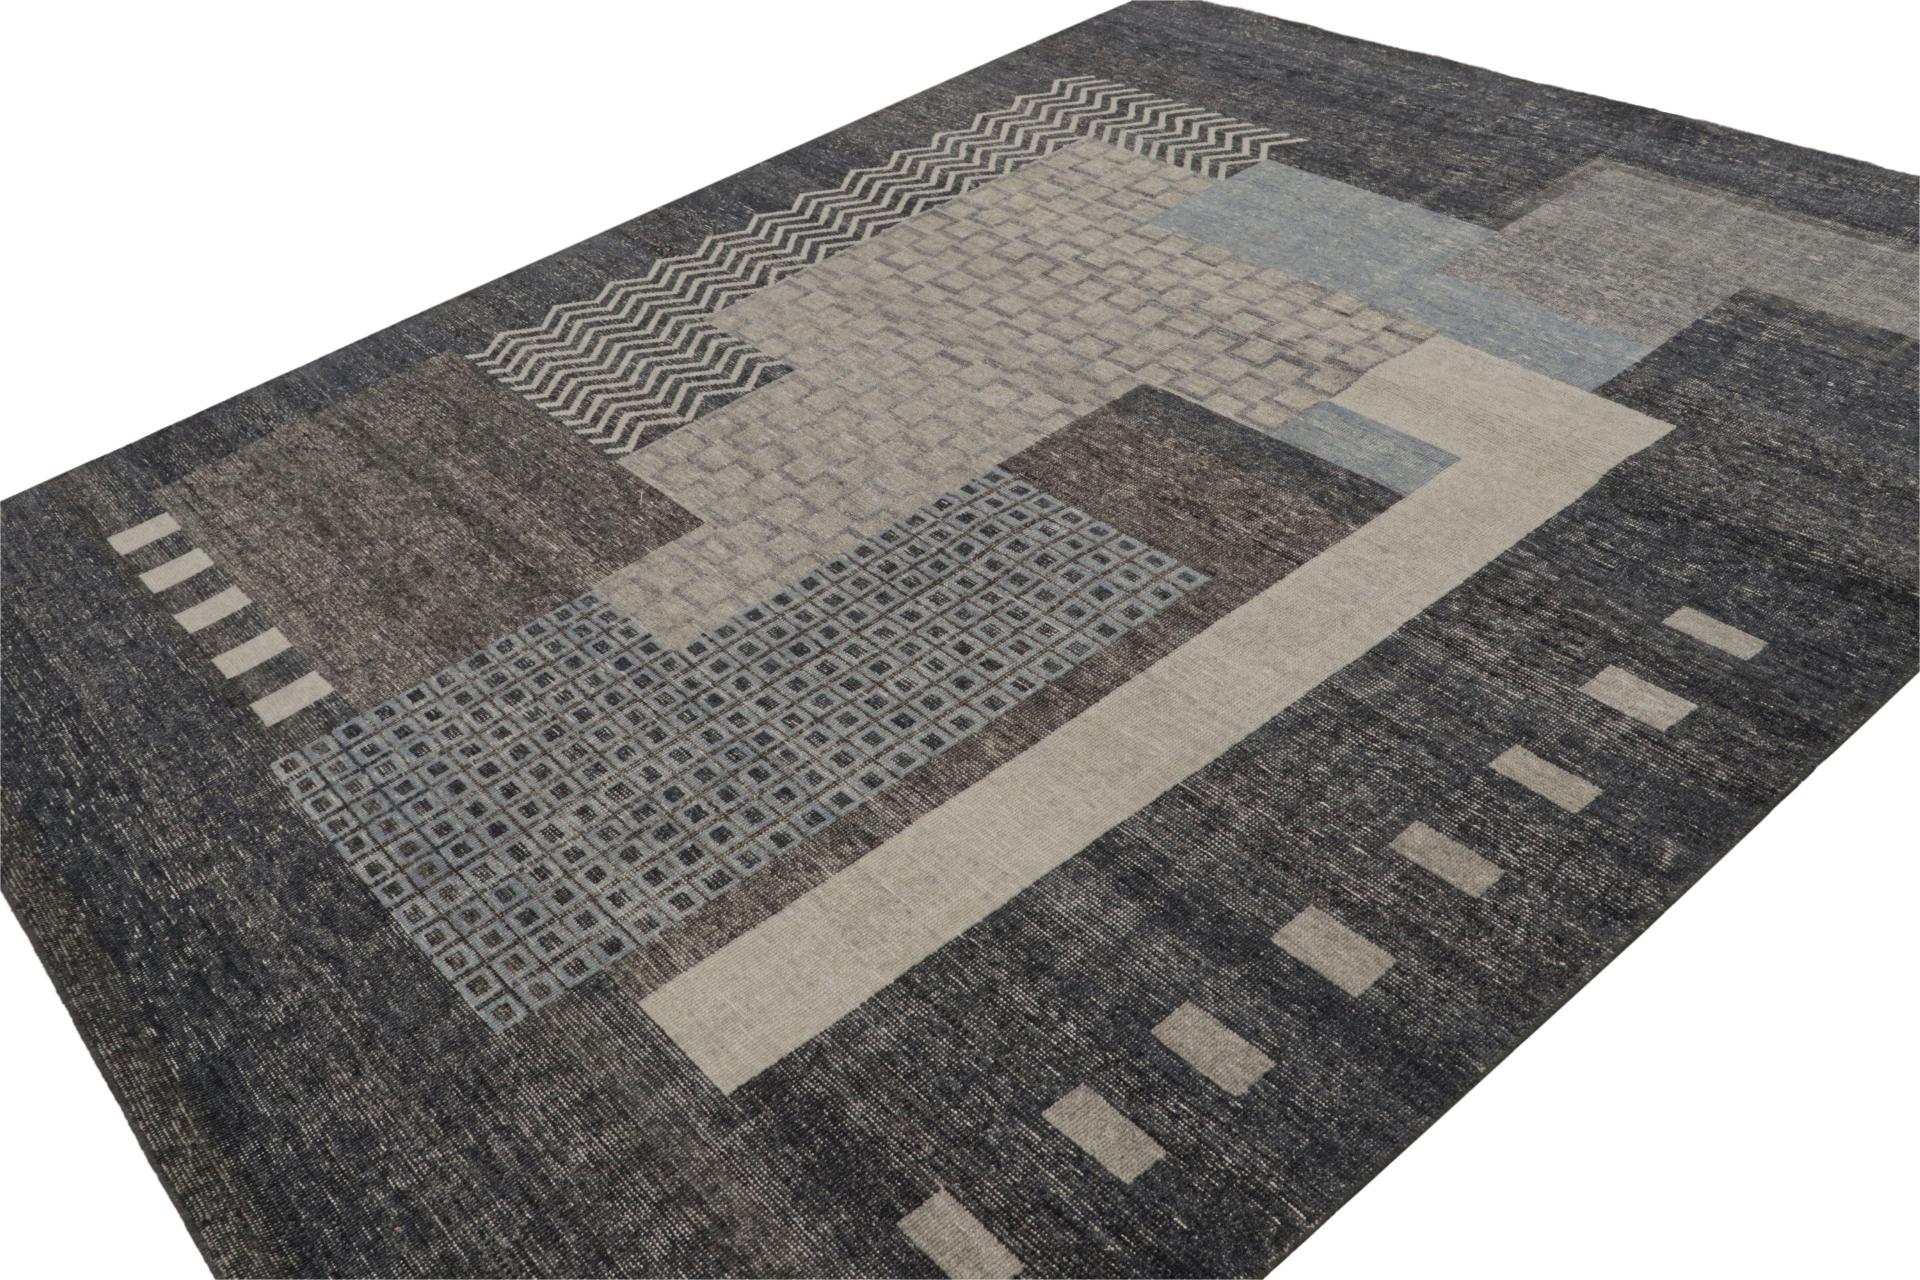 Noué à la main en laine, ce tapis moderne 8x10, a été inspiré par les tapis Art déco français et les sensibilités cubistes similaires de la période européenne, un look des années 1920 dans une nouvelle façon texturale d'apprécier le style. 

Sur le